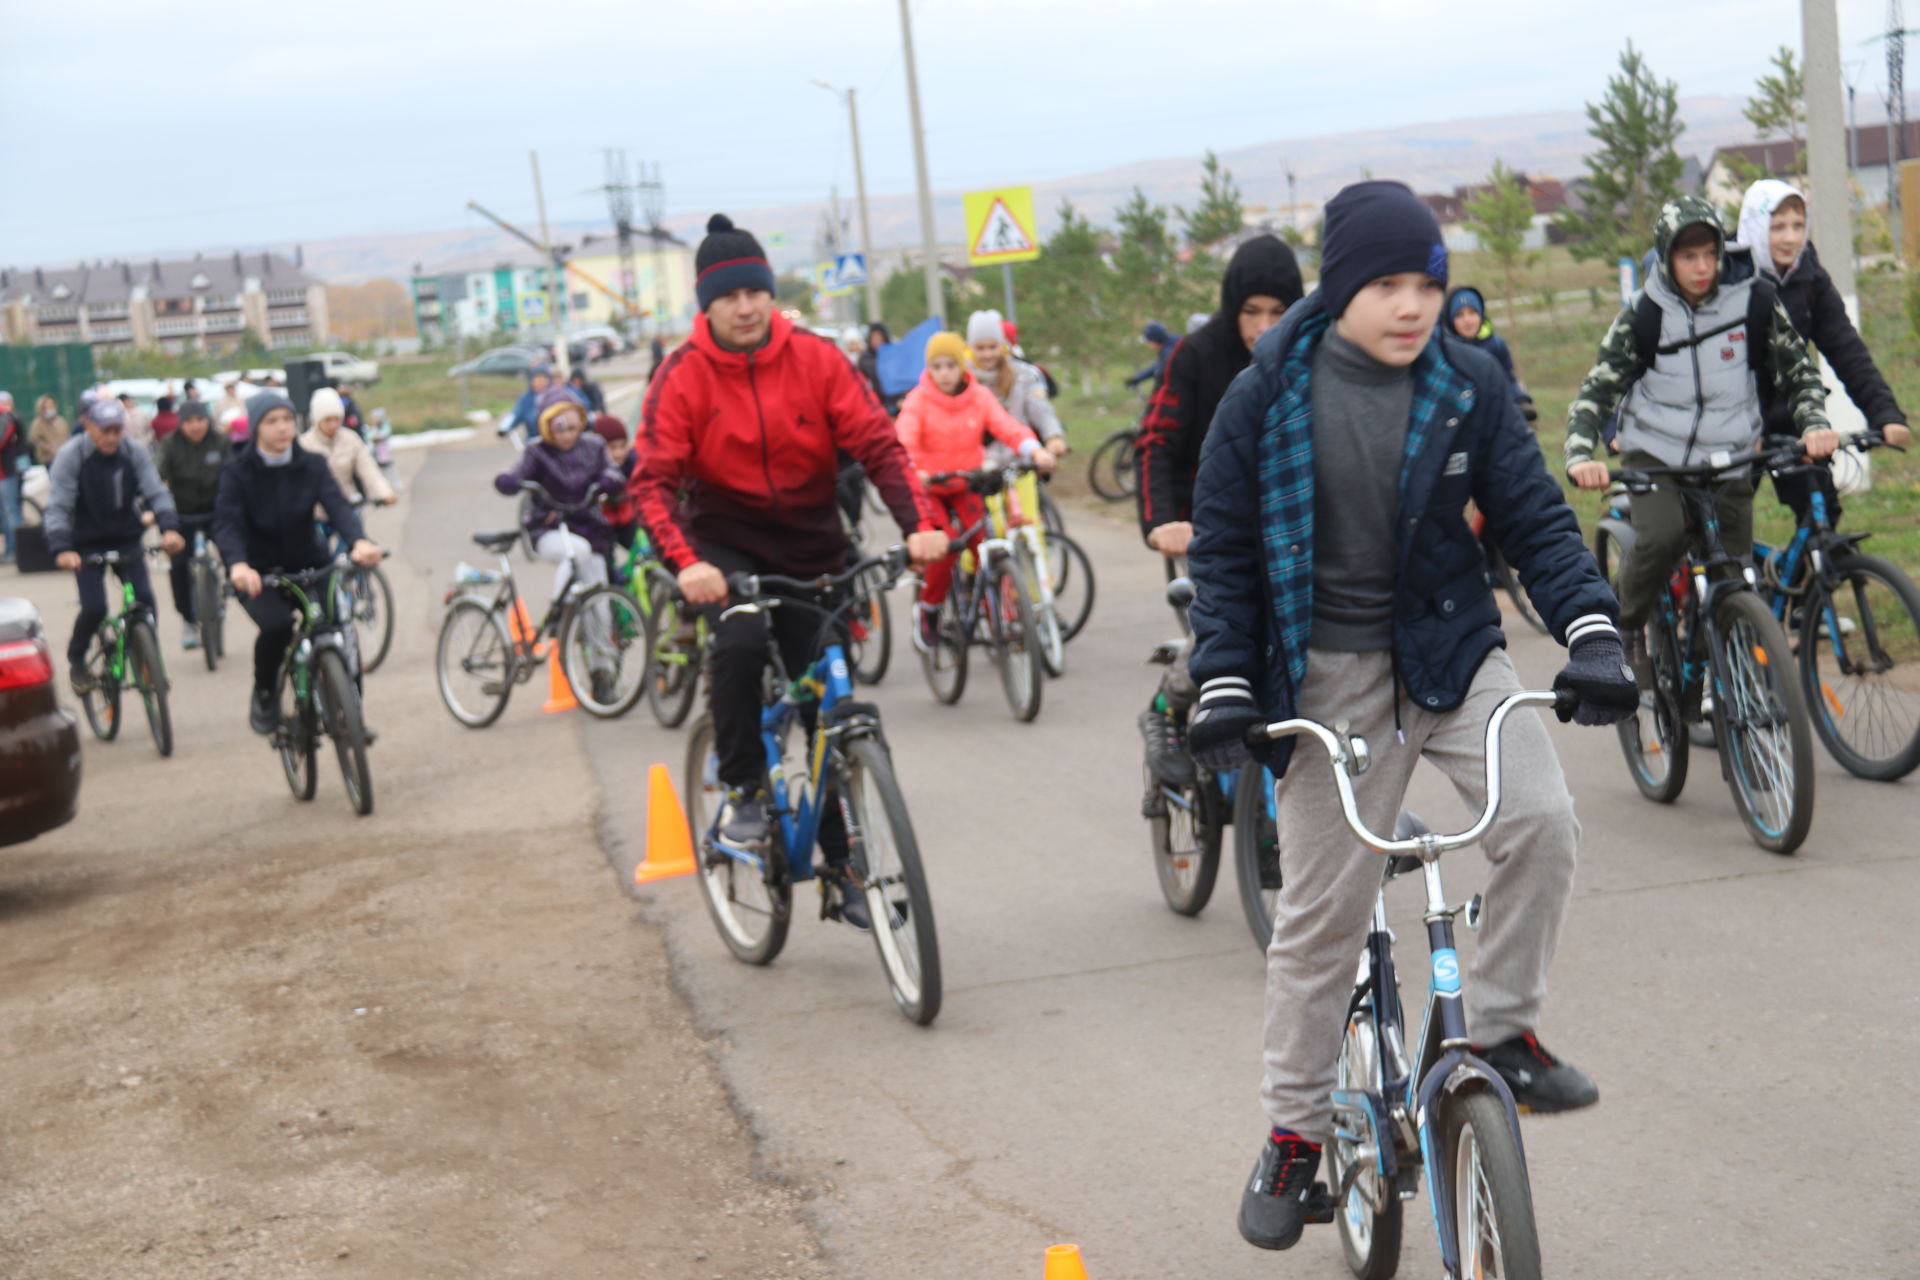 Стартовавший в поселке Уруссу велопробег был посвящен обличению подрастающим поколением экстремизма